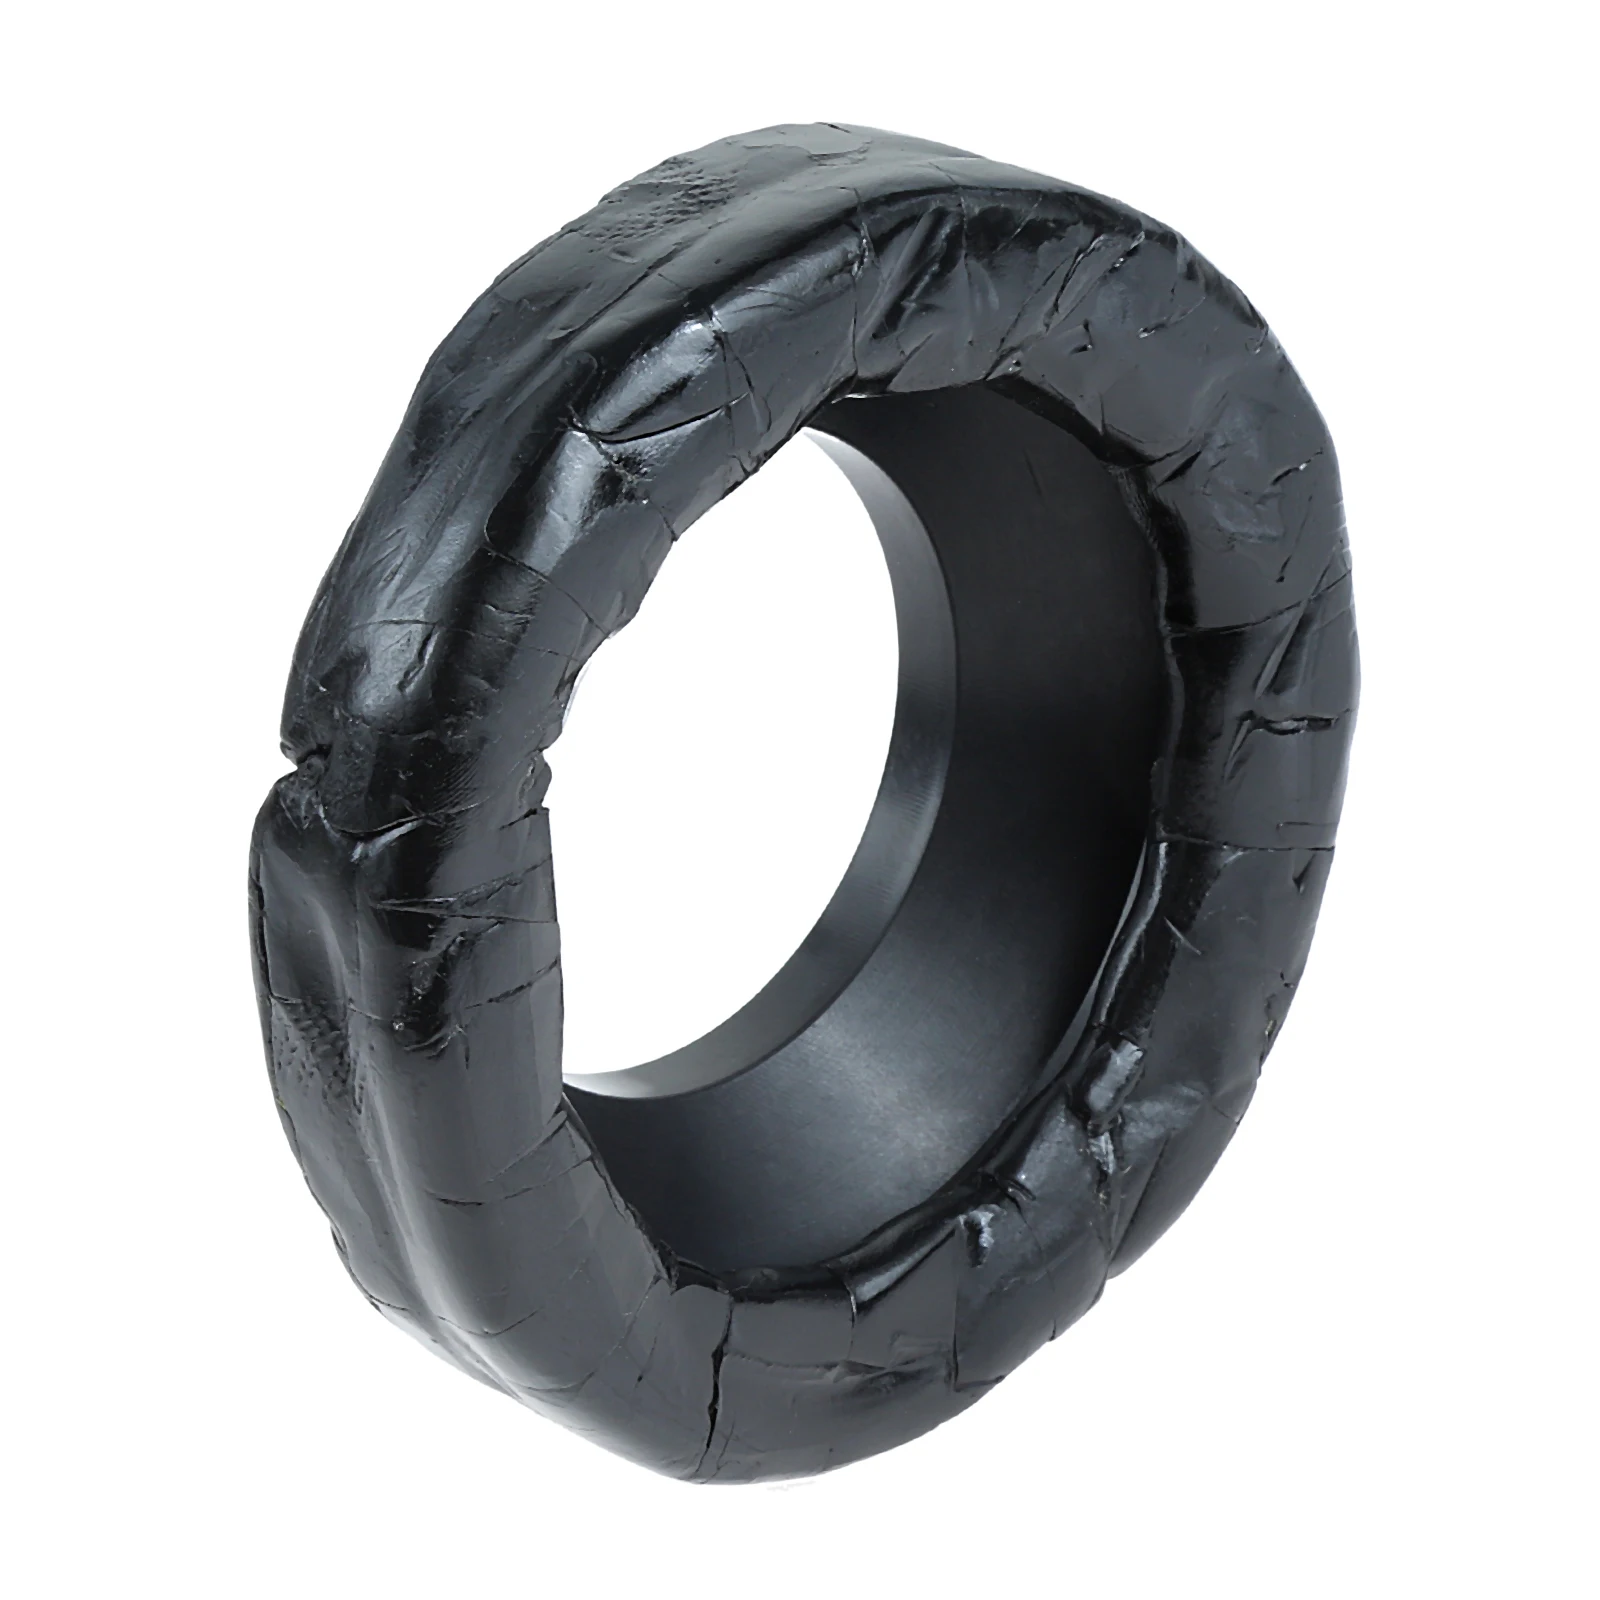 Уплотнительное кольцо для унитаза, устойчивое к запахам, Уплотнительное кольцо для сливной трубы, инструмент для защиты унитаза от протечек для сливных отверстий диаметром 76-110 мм